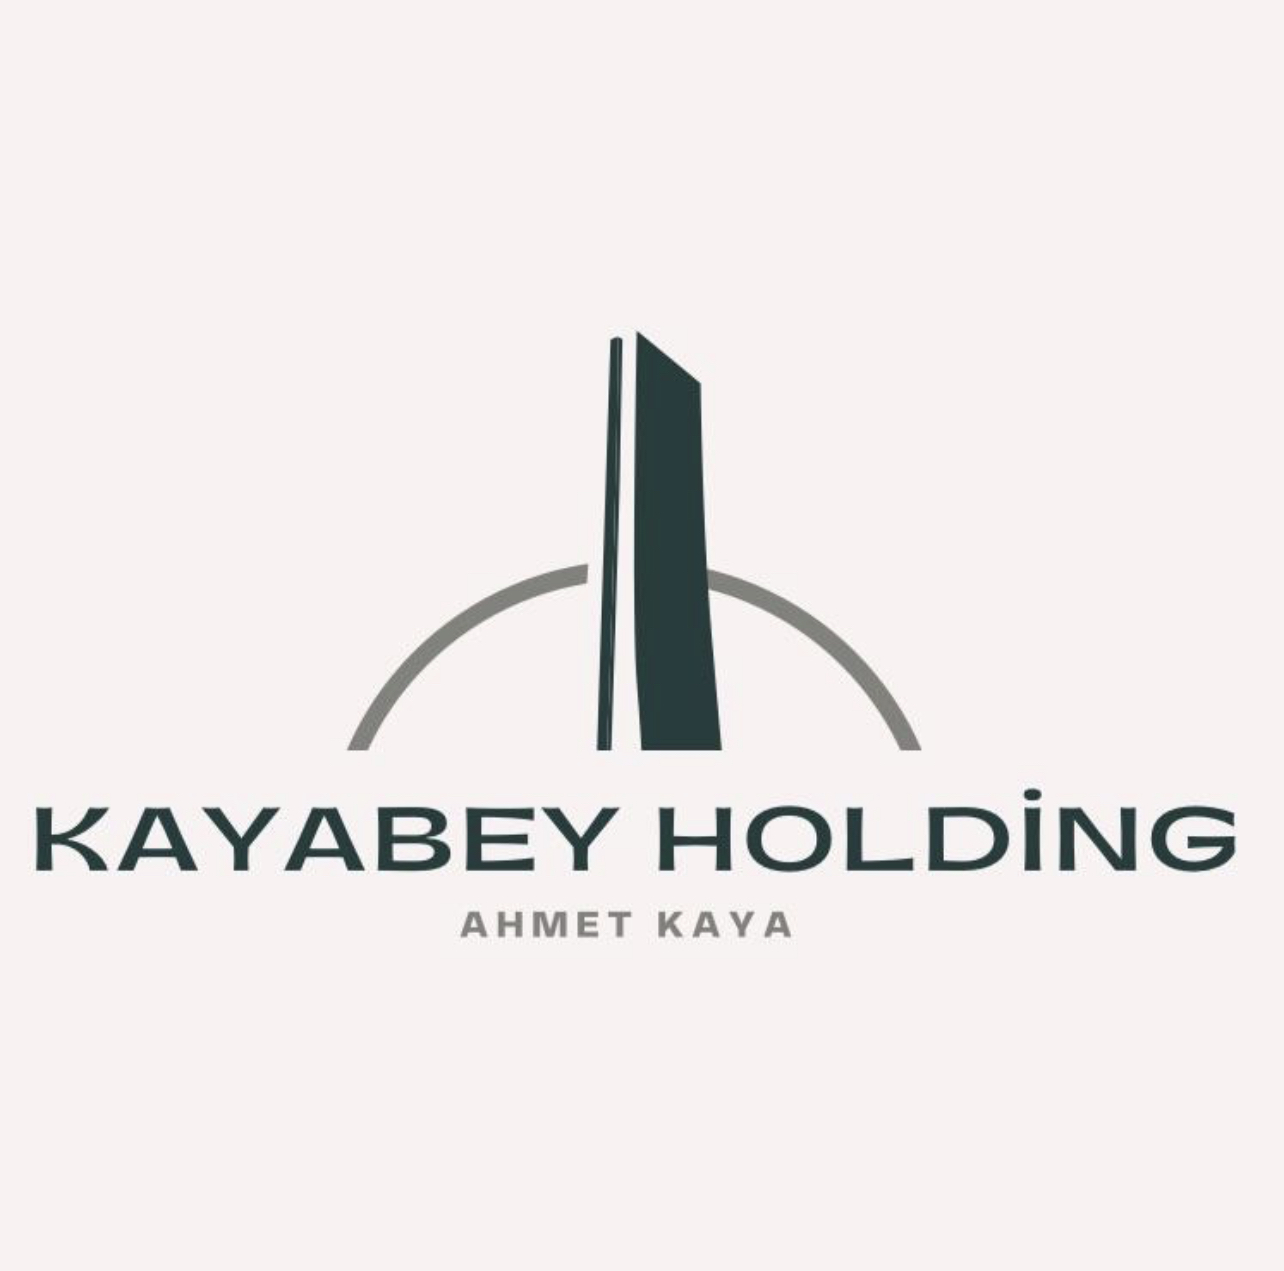 Kayabey Holding